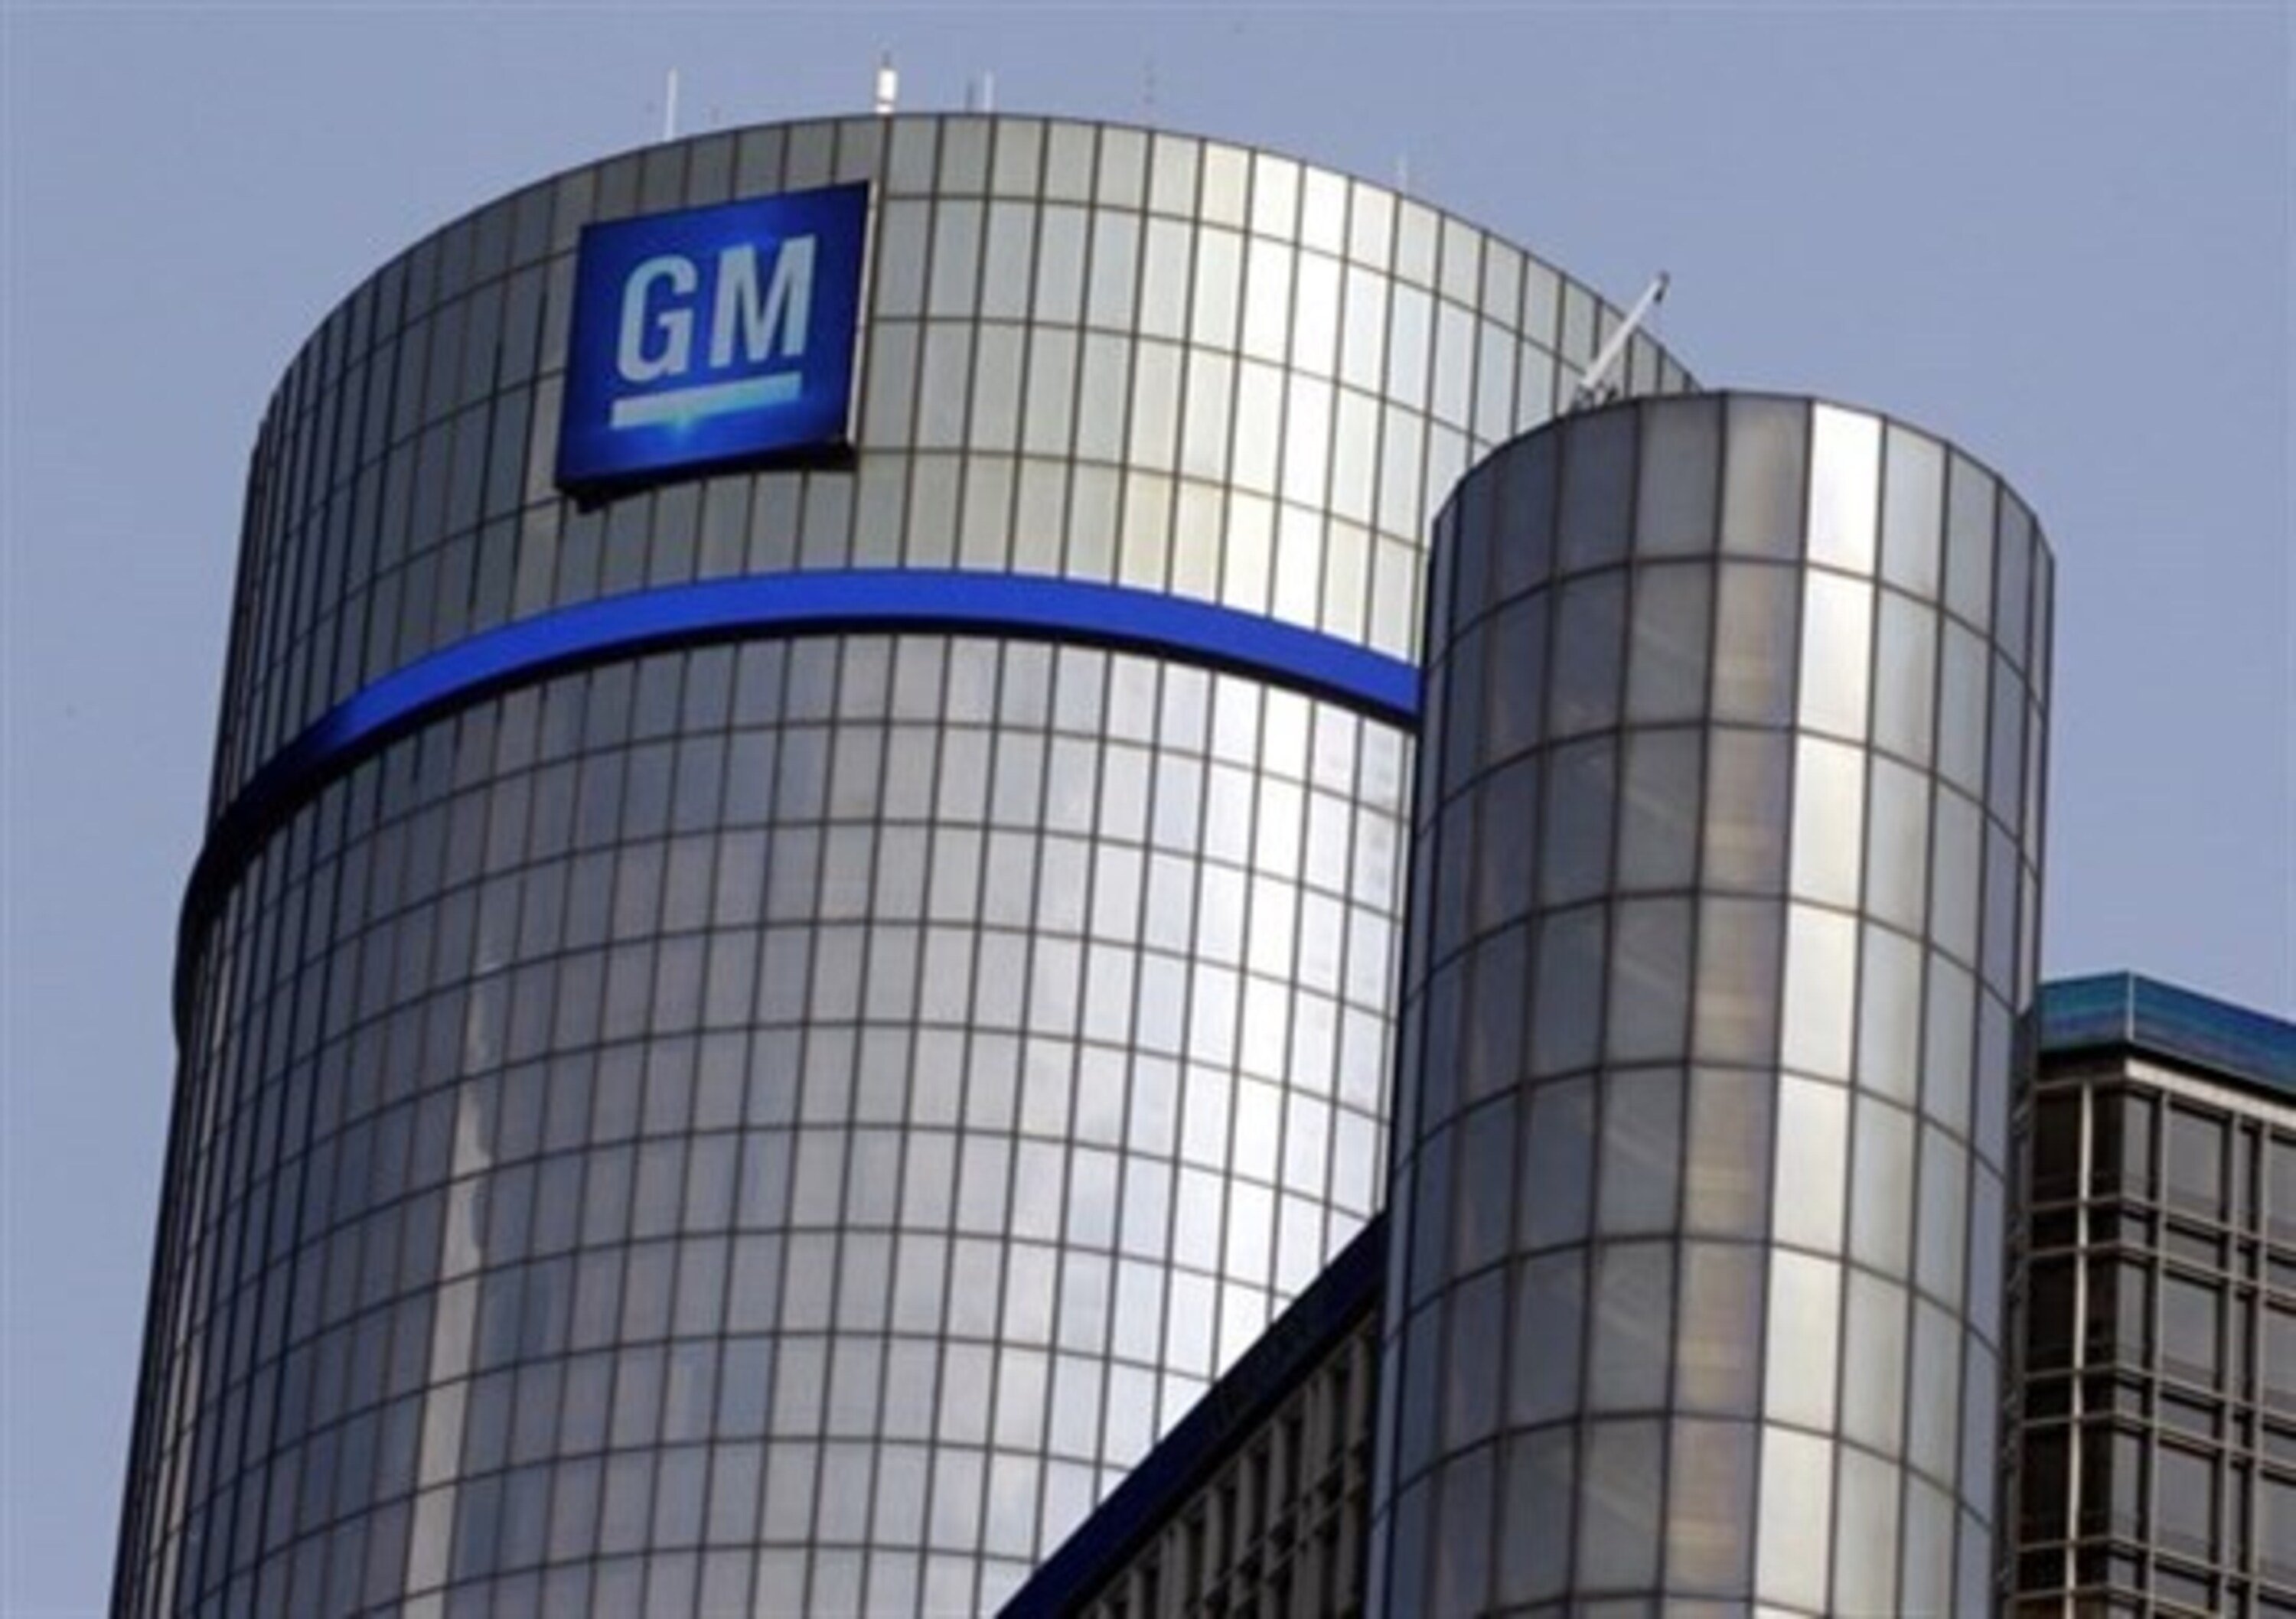 Guida autonoma: alleanza tra GM e Microsoft